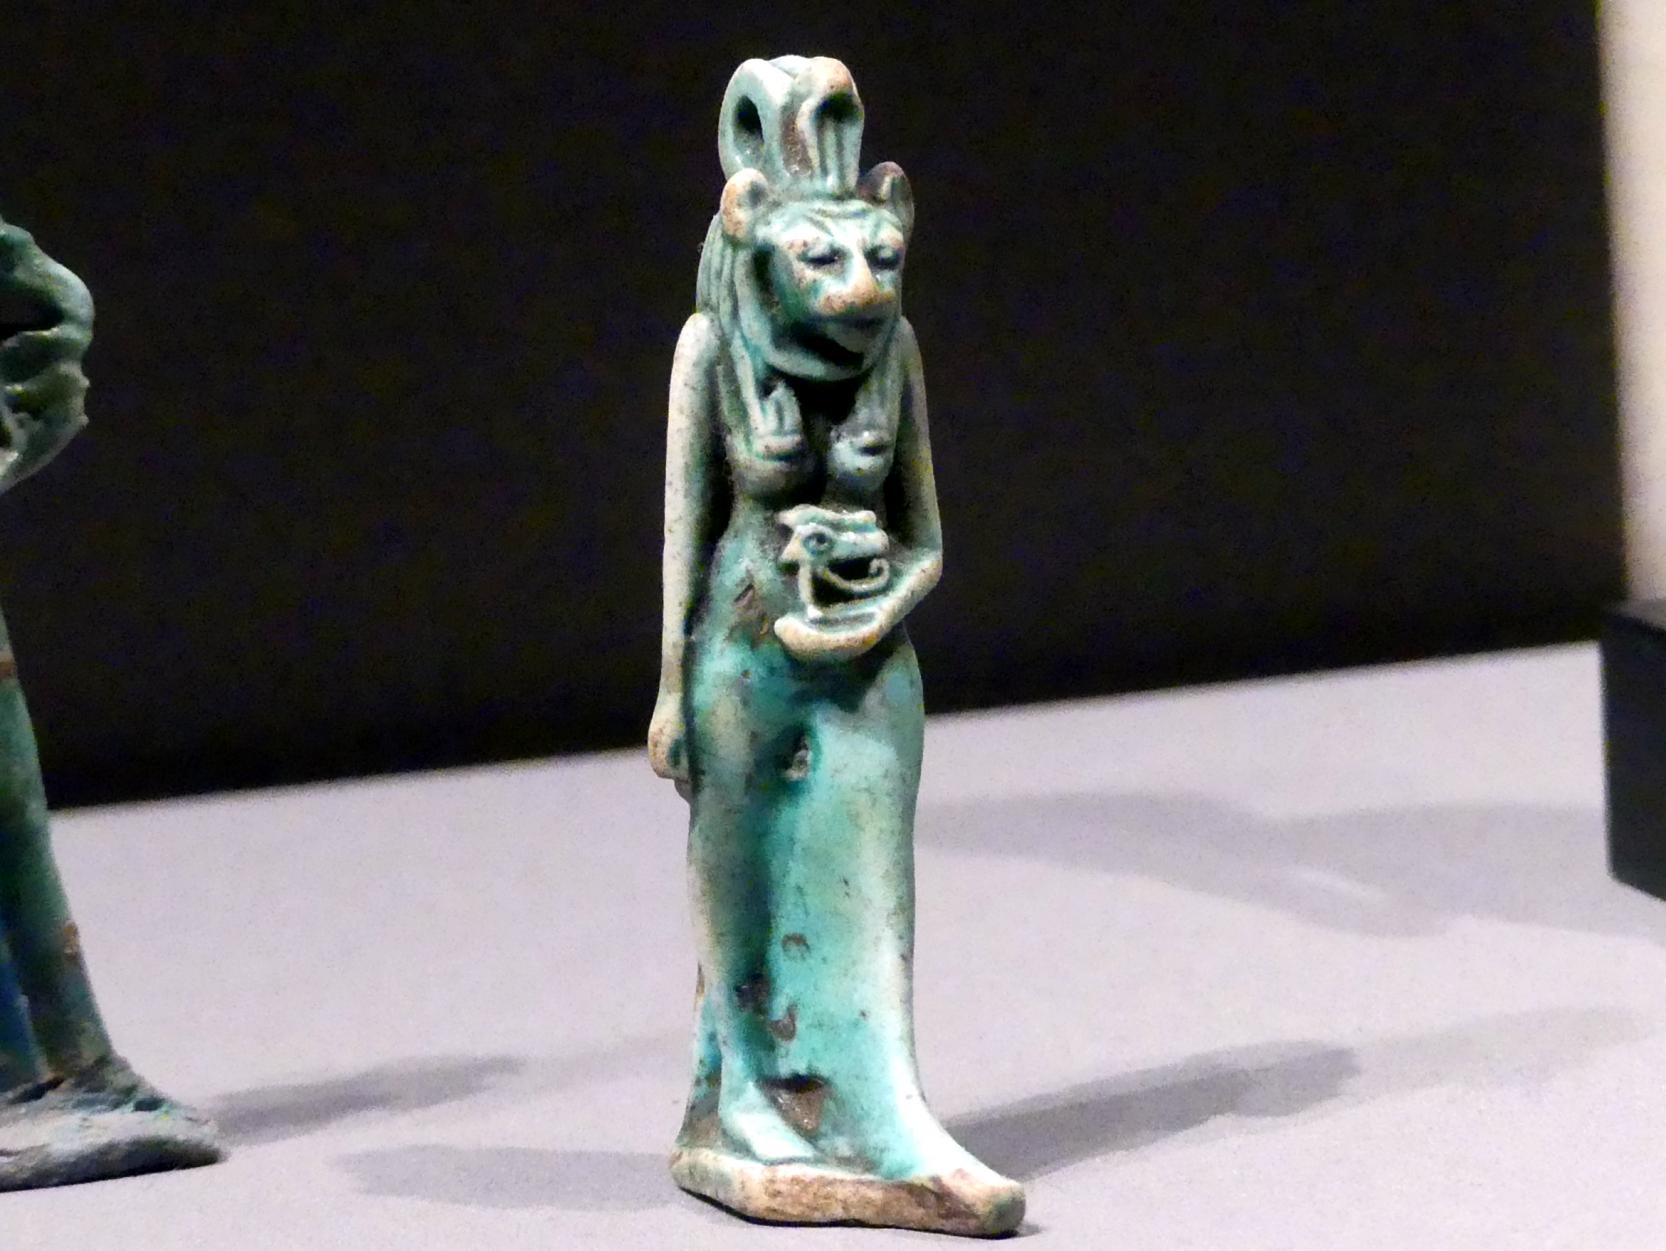 Standfigur der Sachmet, das geheilte Horusauge (Udjat) tragend, 1000 - 500 v. Chr., Bild 2/3